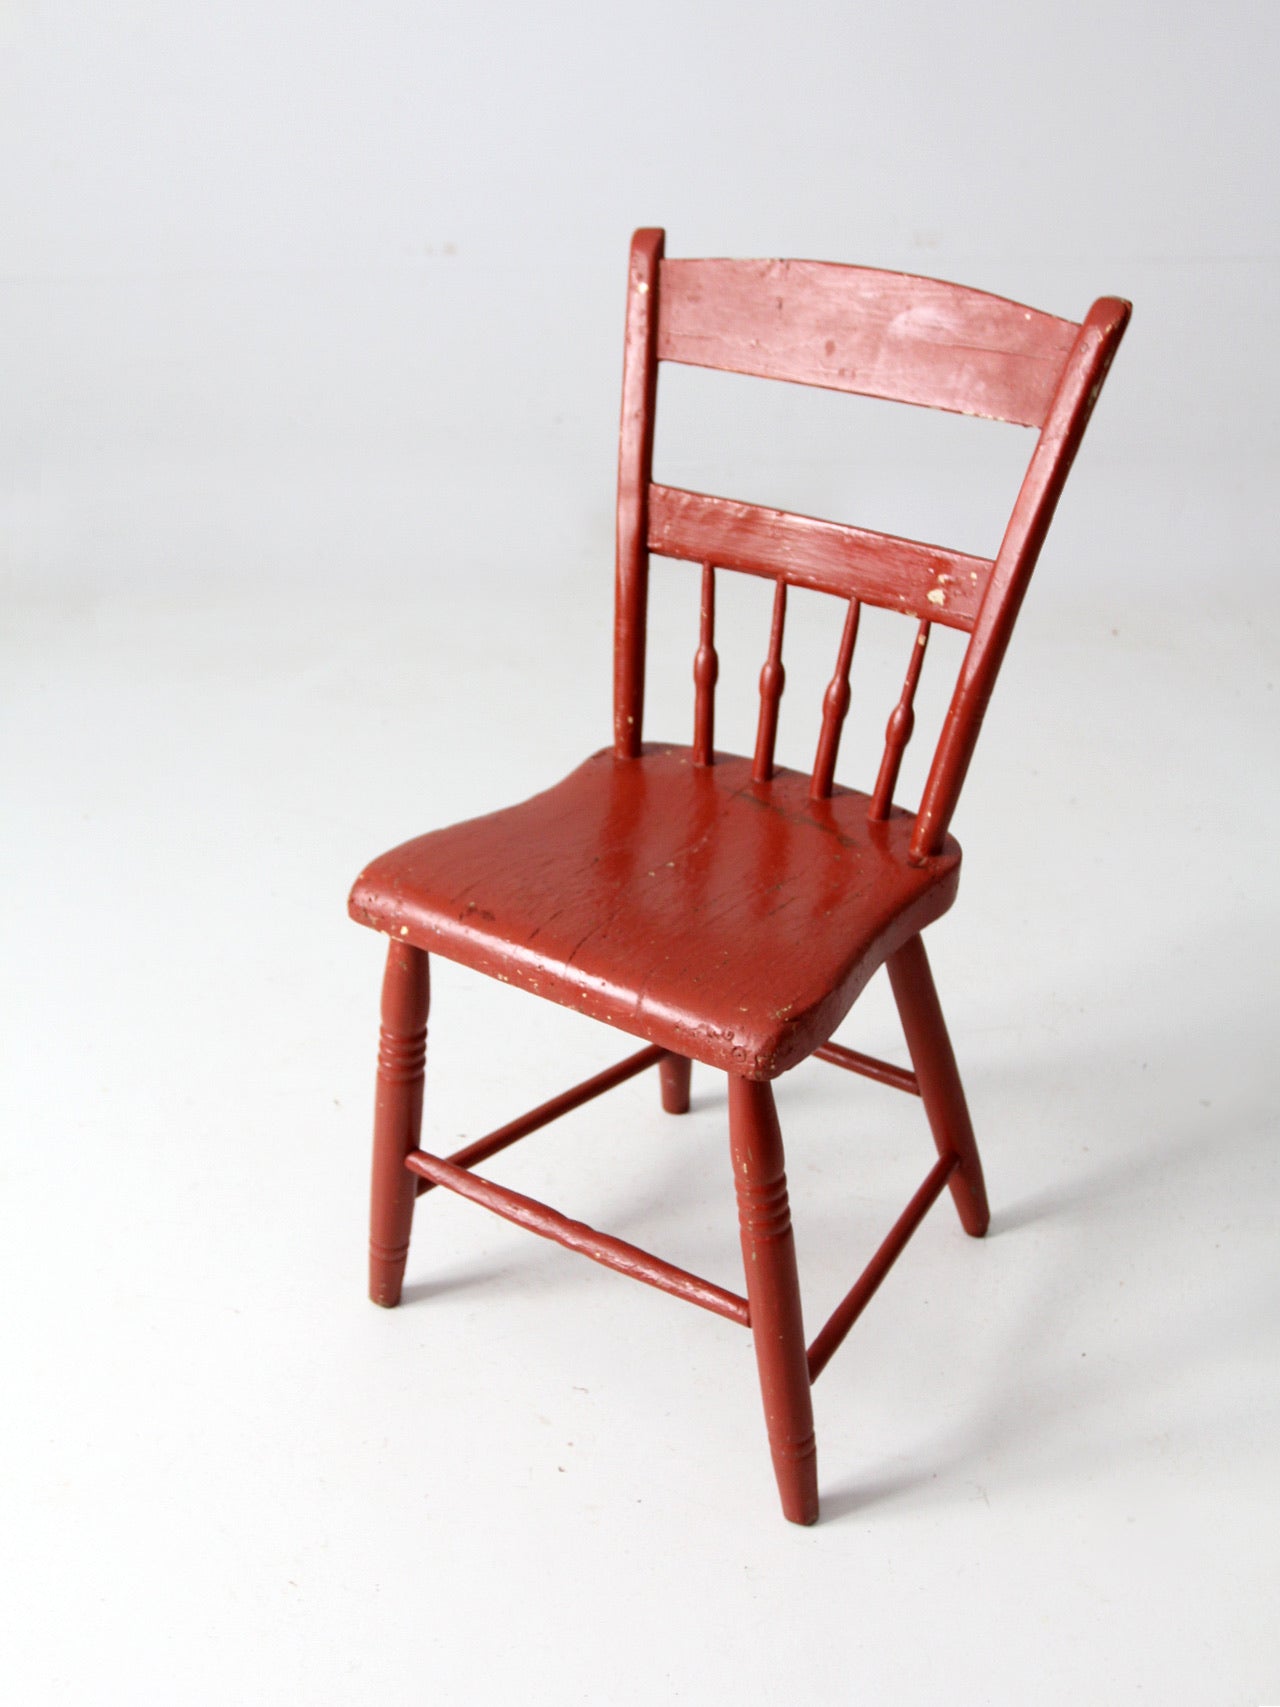 antique painted primitive plank seat chair